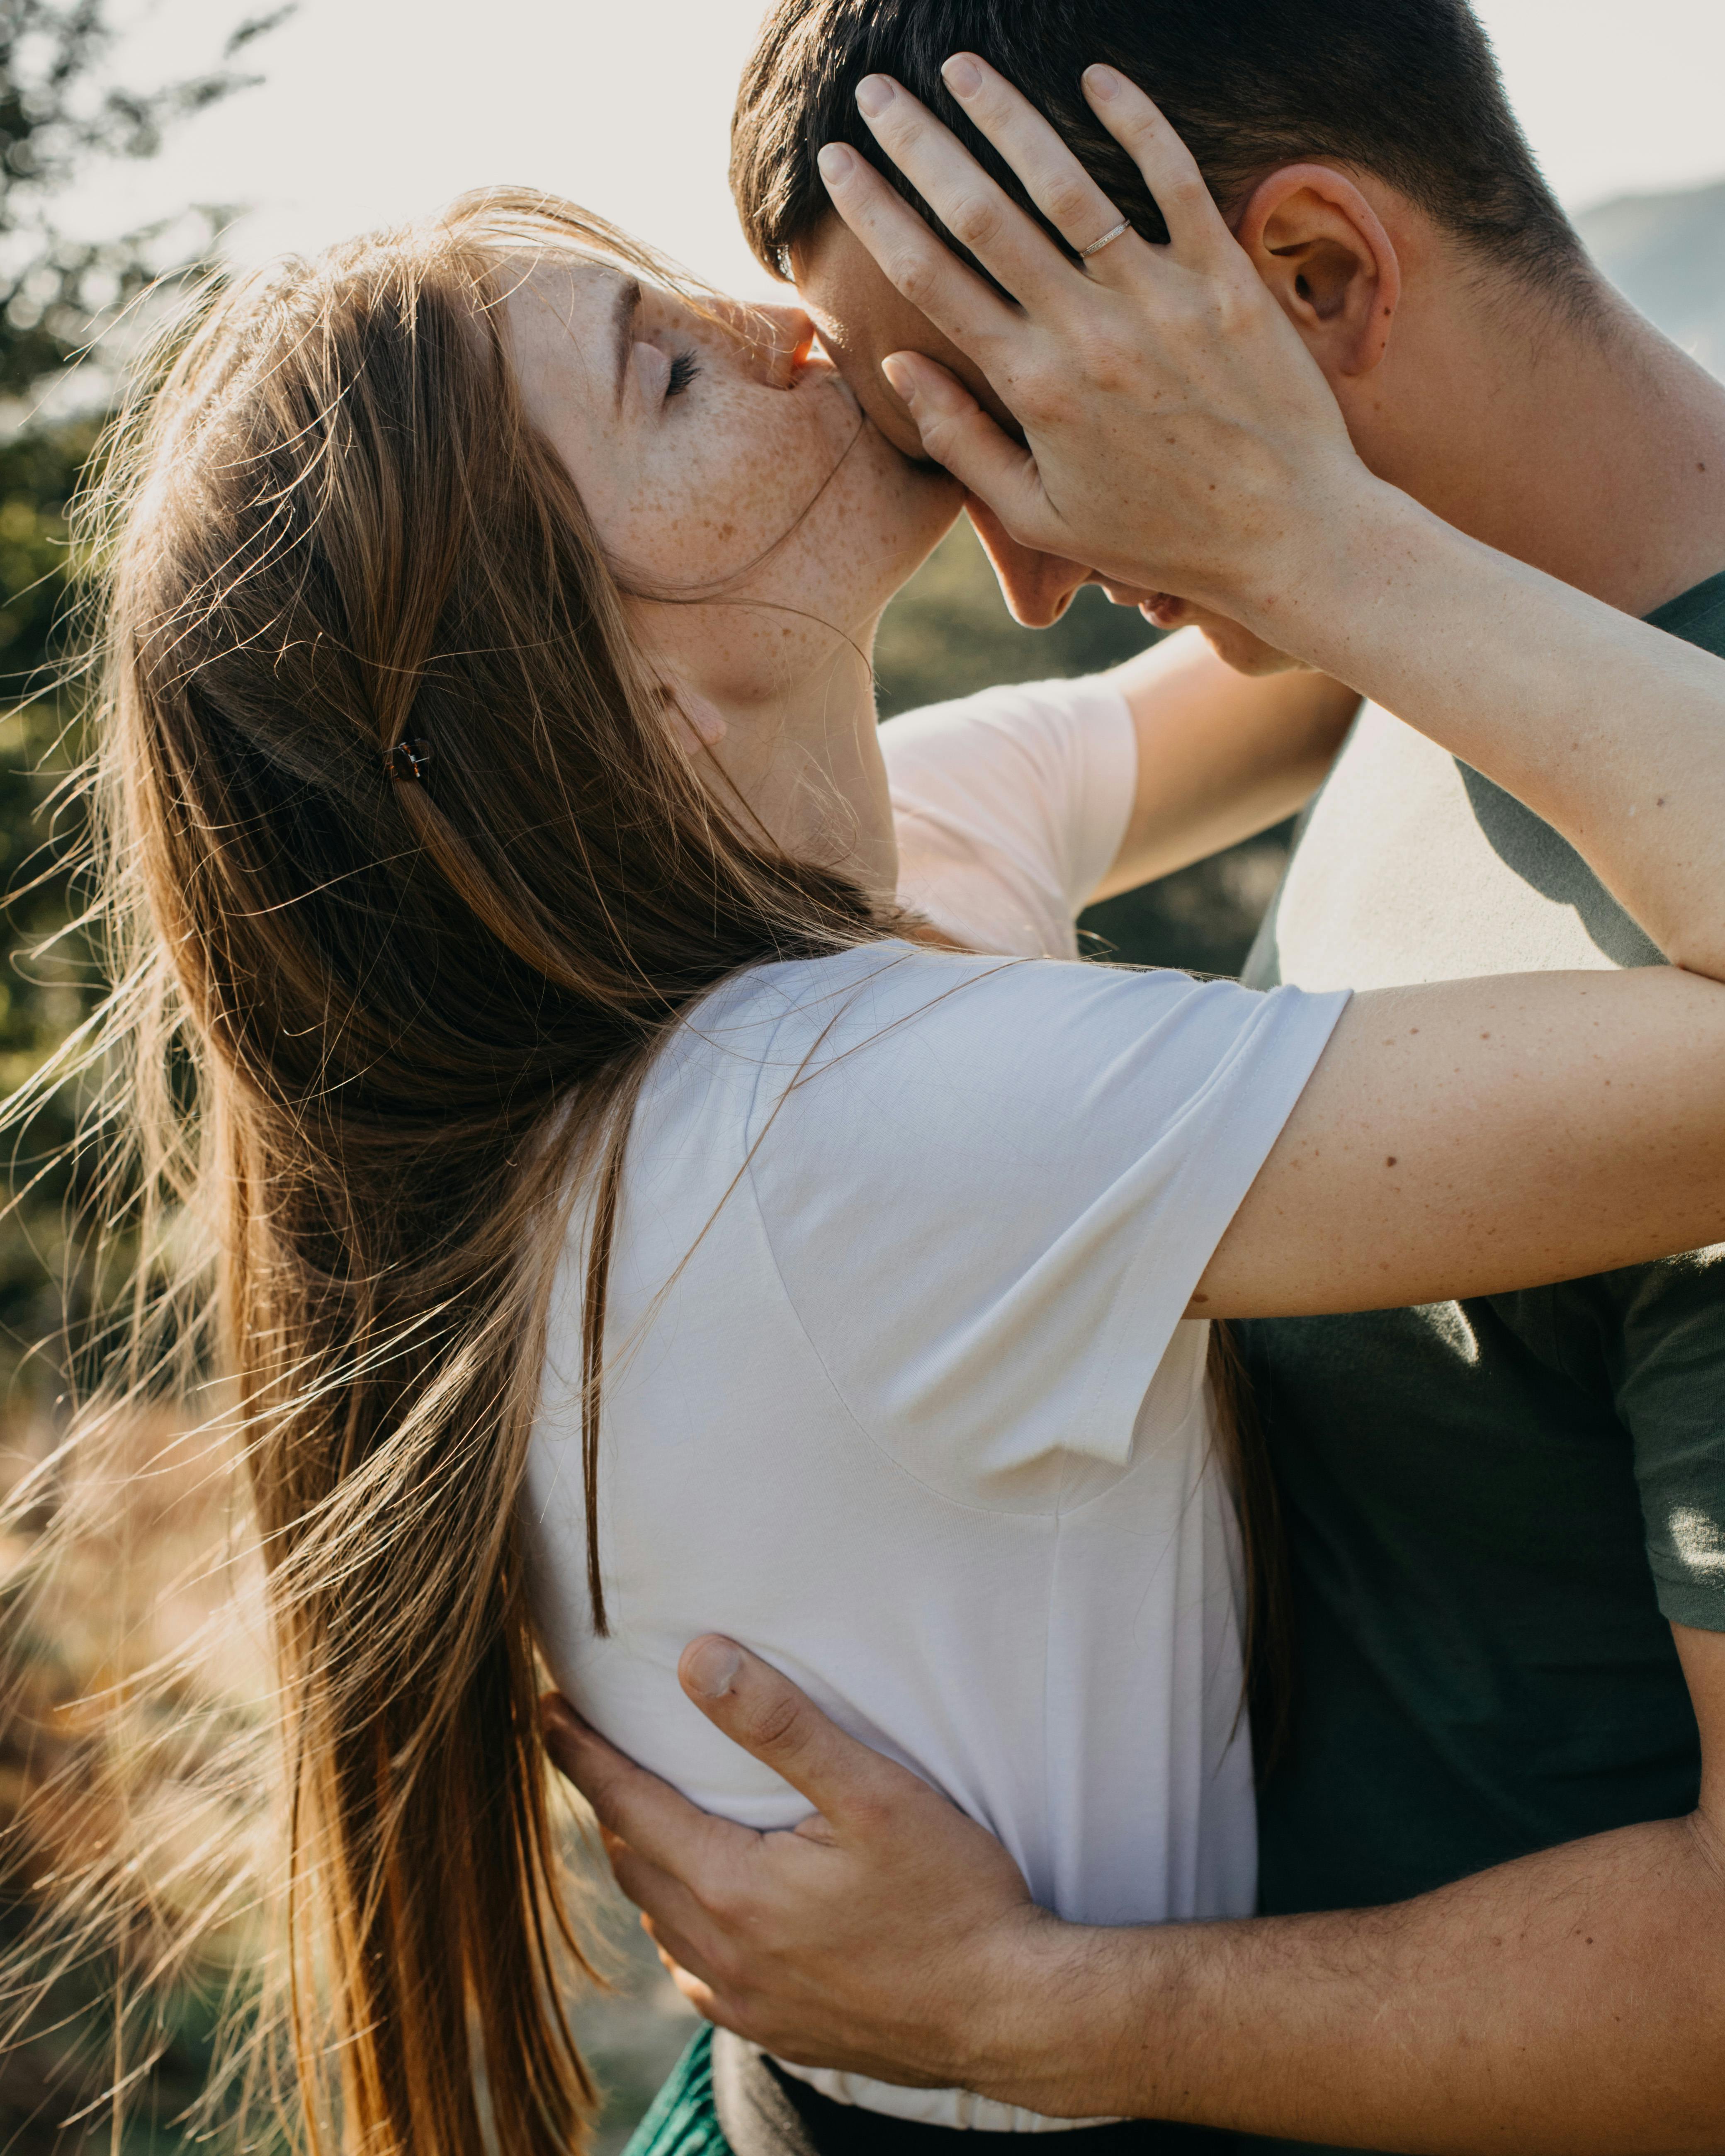 Une femme embrassant son partenaire sur le front | Source : Pexels